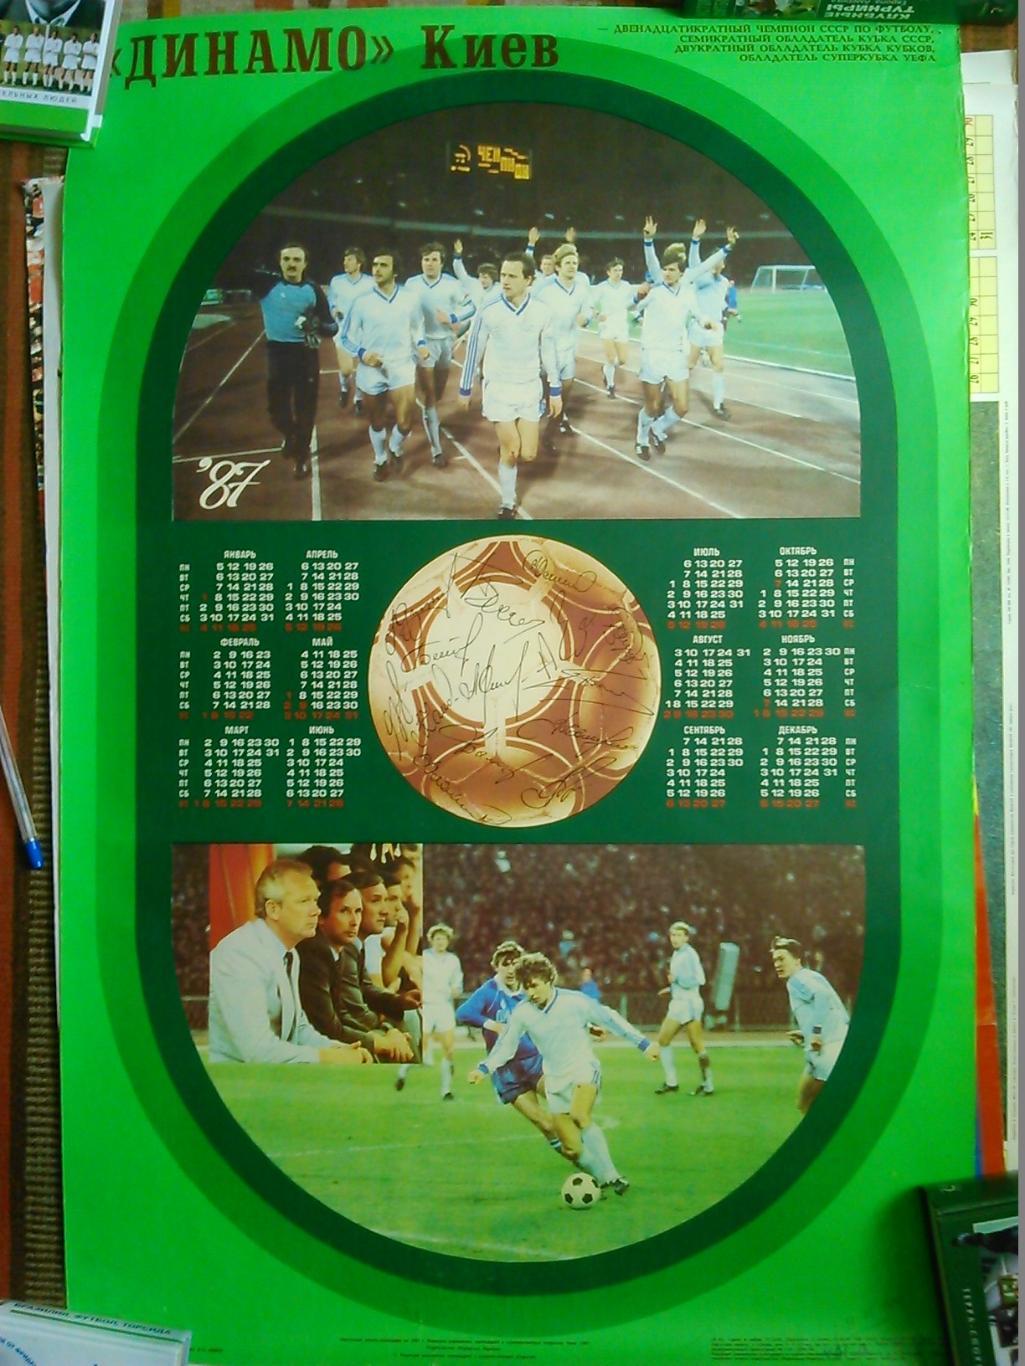 Плакат ДИНАМО Киев 1989 (88 х 60 см.). Оптом скидки до 49%! 2